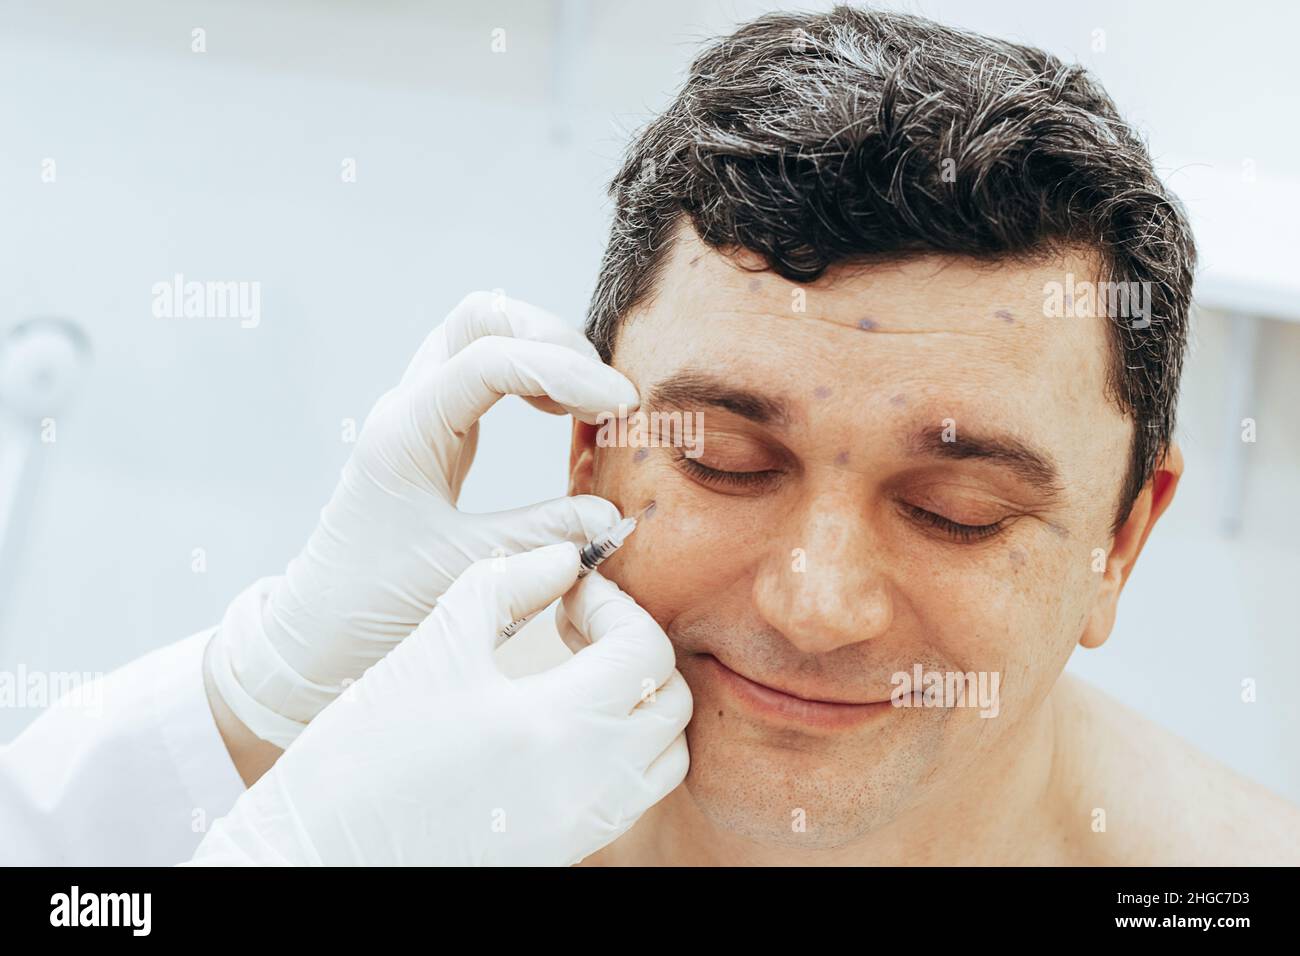 Le cosmétologue effectue une procédure de rajeunissement met Botox injection sur l'homme.Le concept des soins rajeunissants Banque D'Images